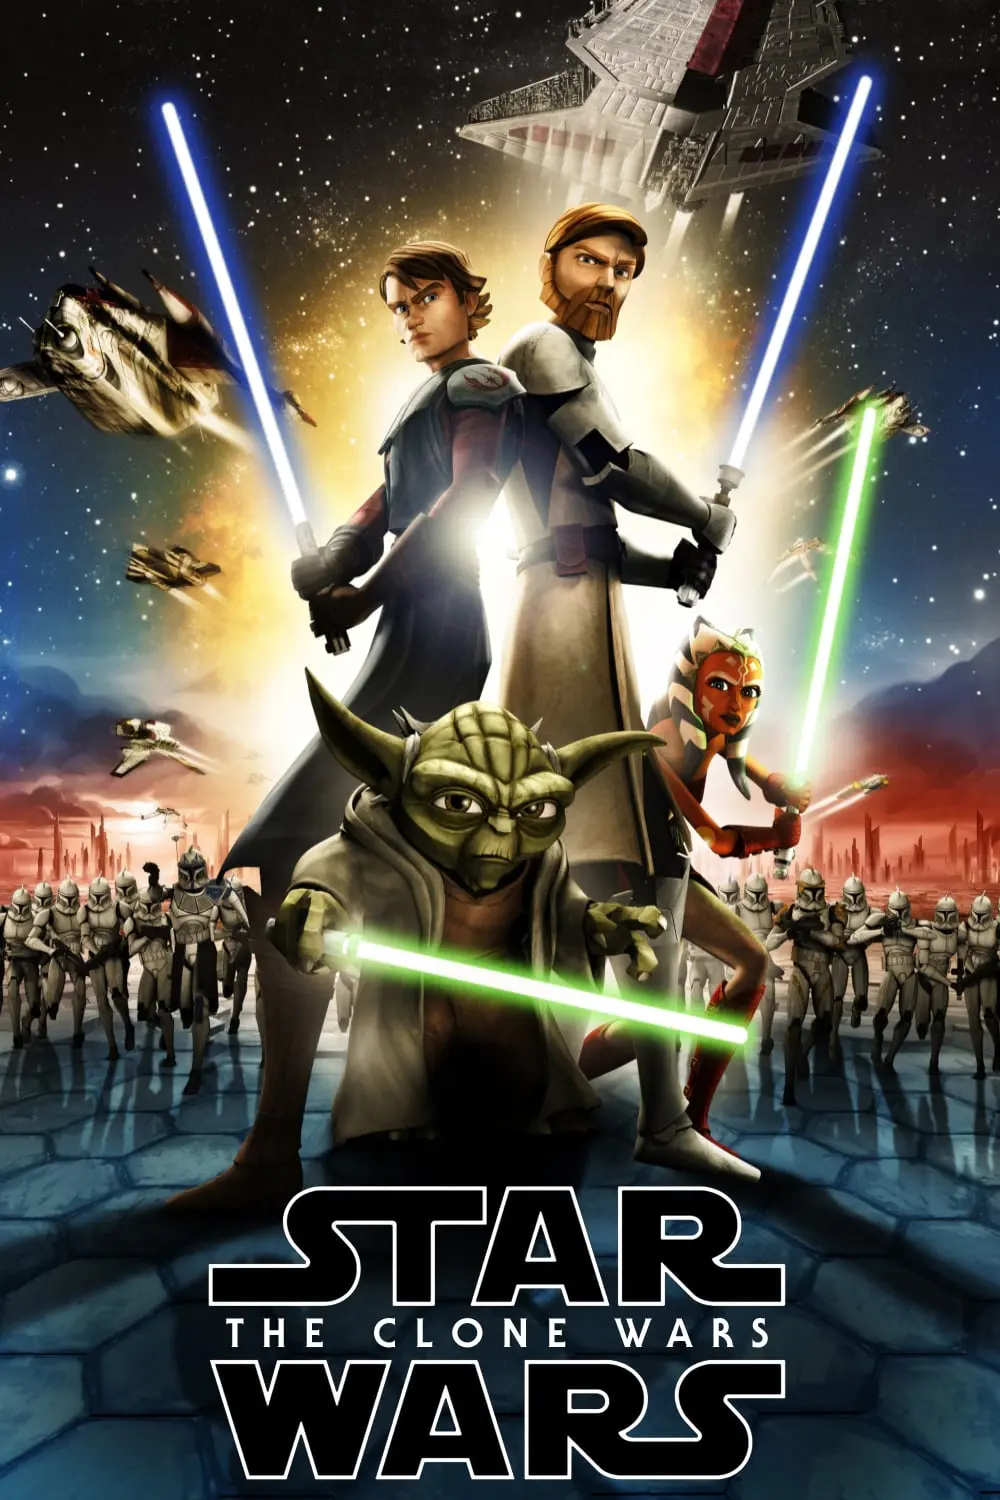 Star Wars: A Guerra dos Clones_peliplat